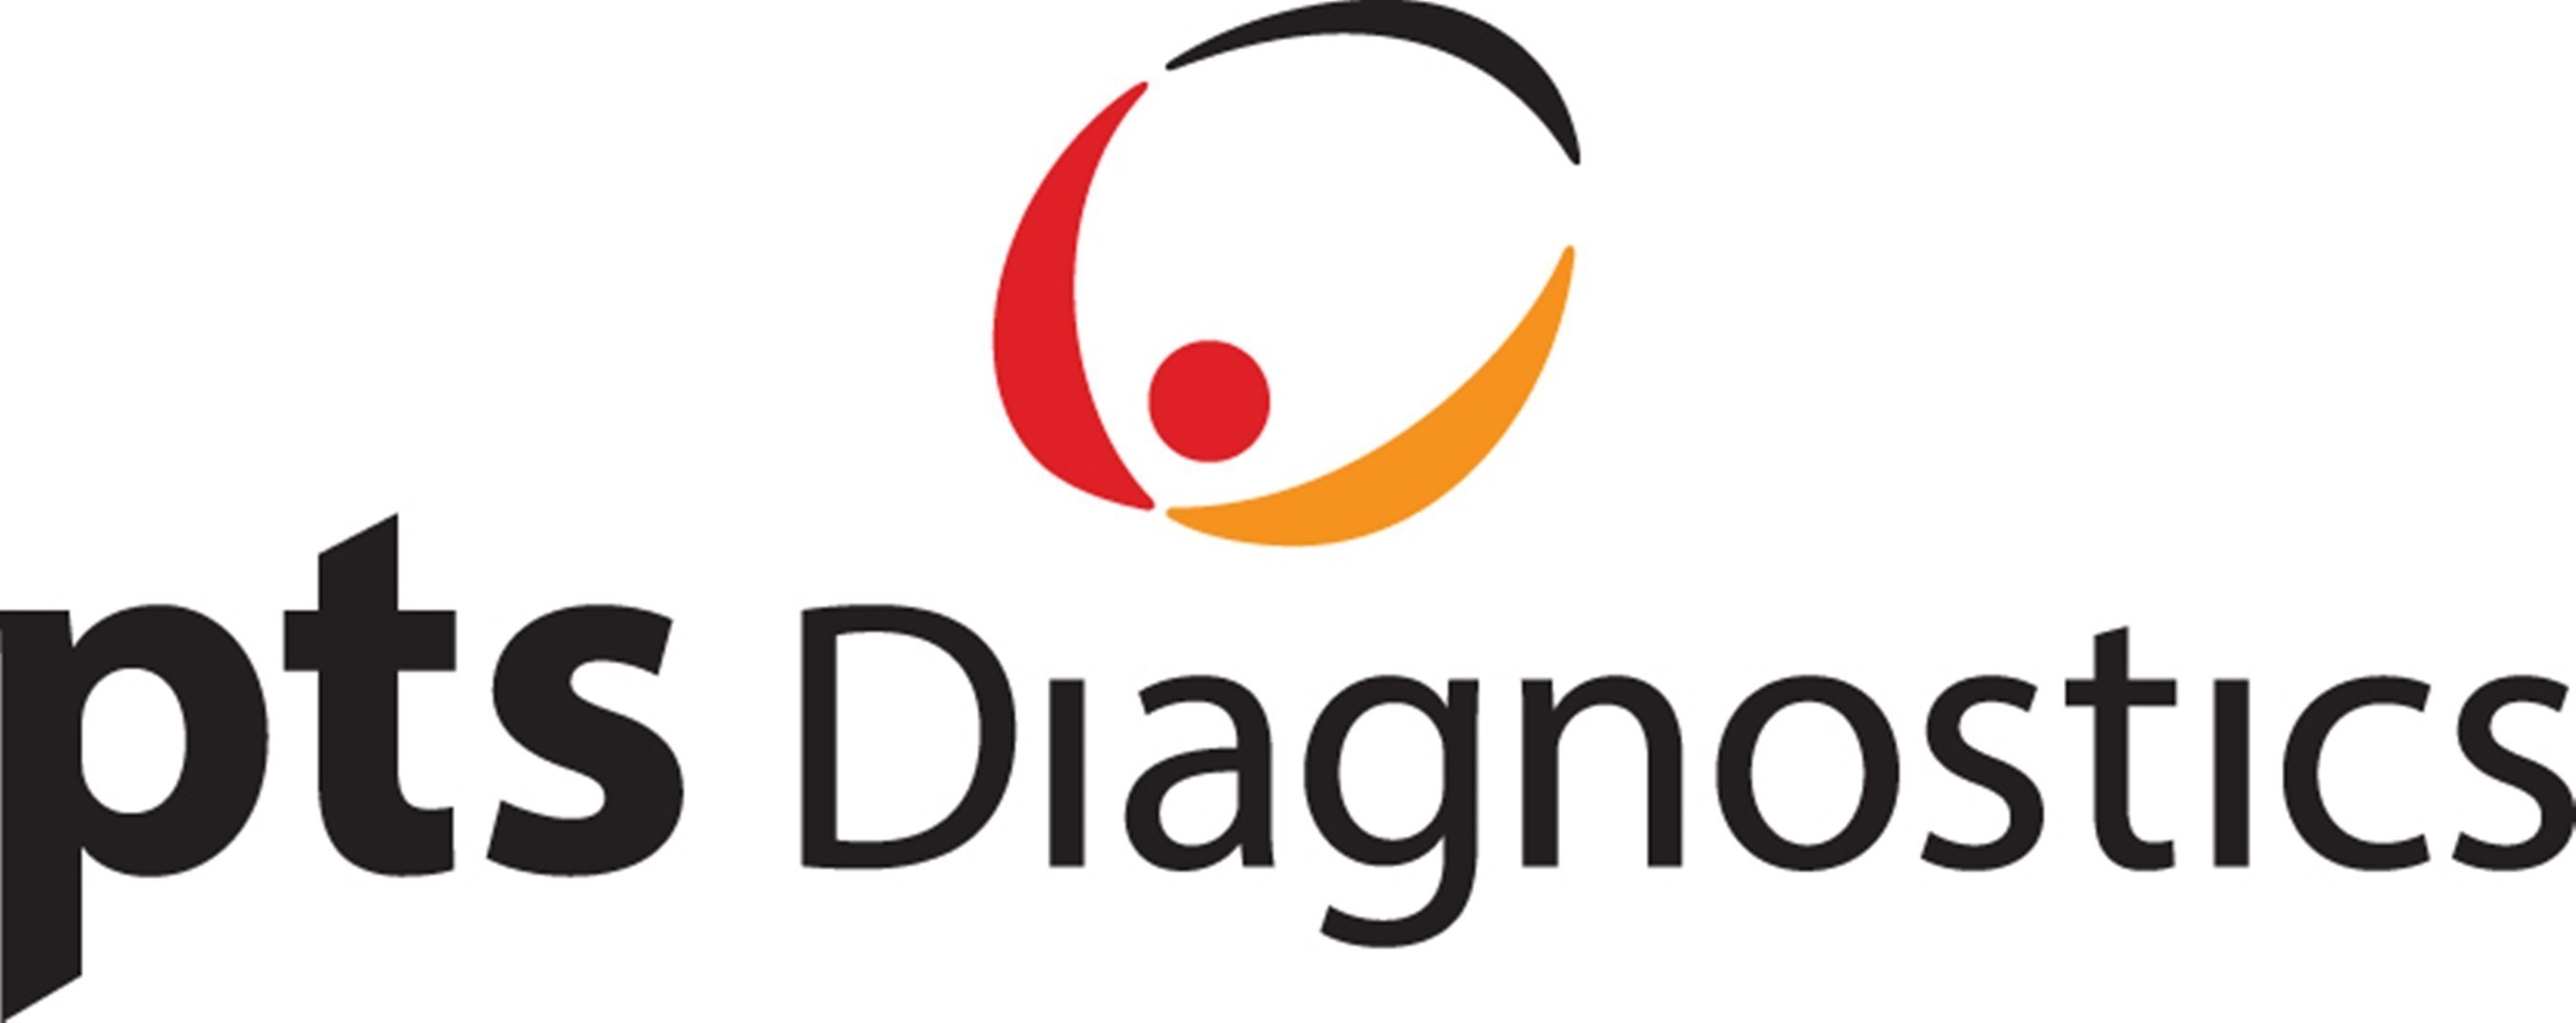 PTS Diagnostics logo